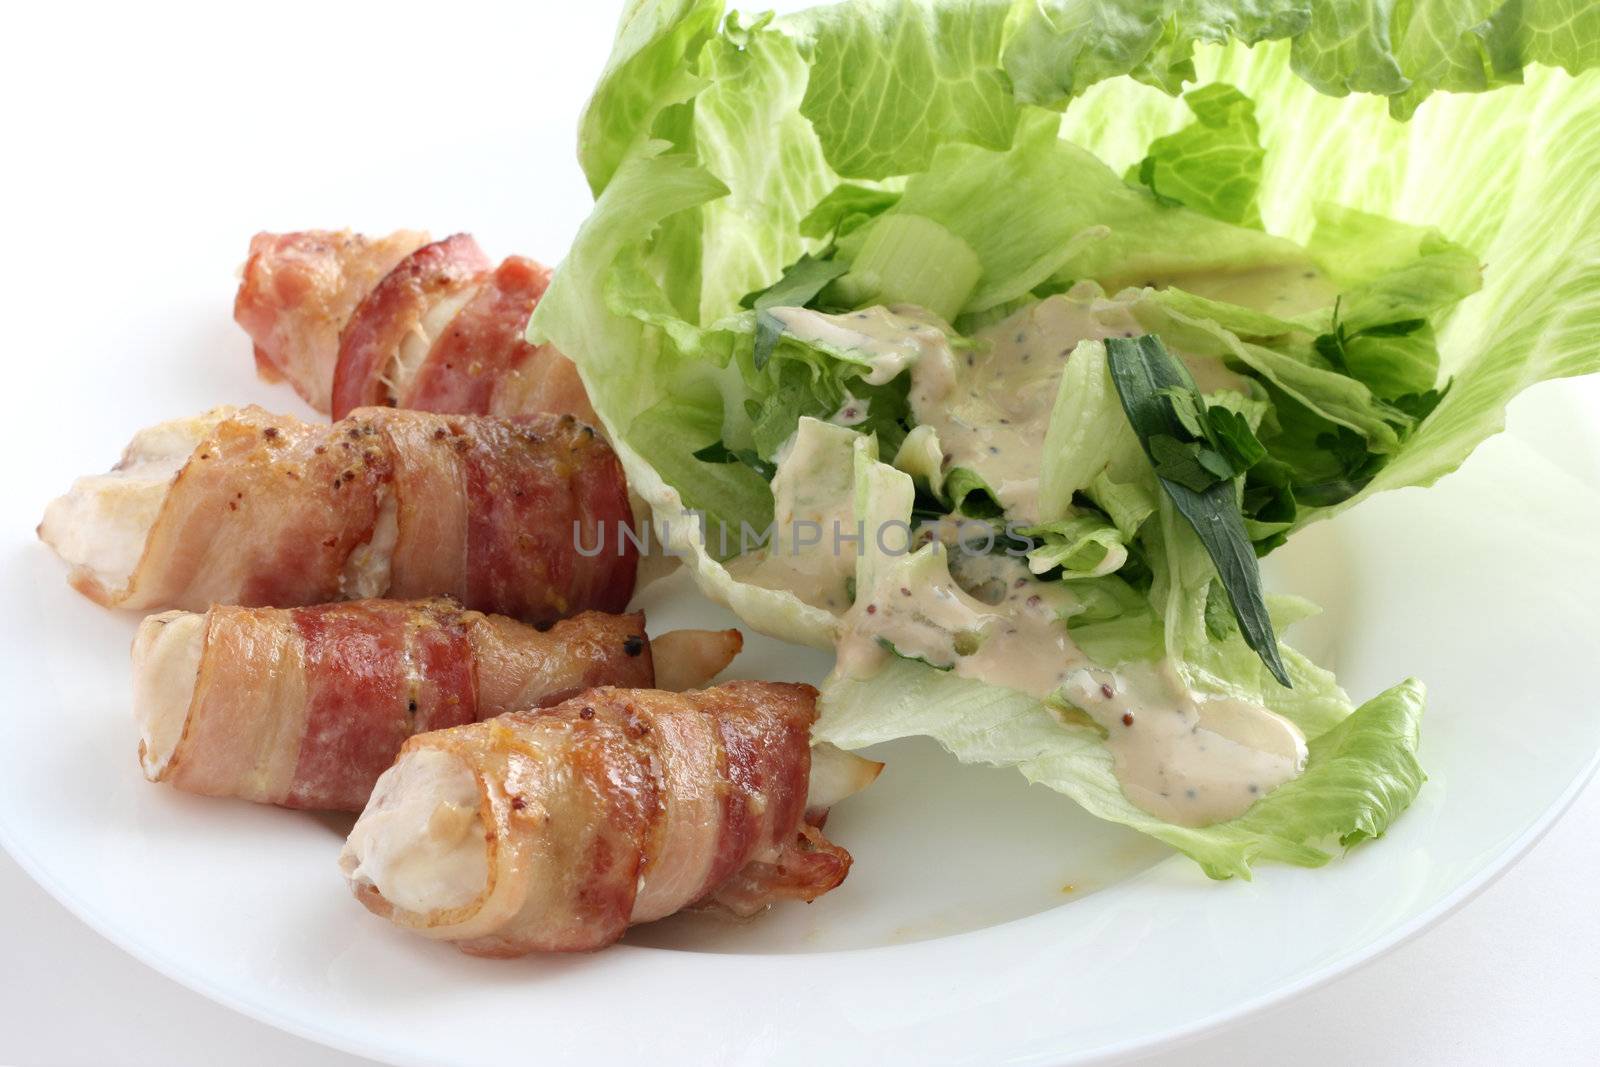 Chicken rolls with salad